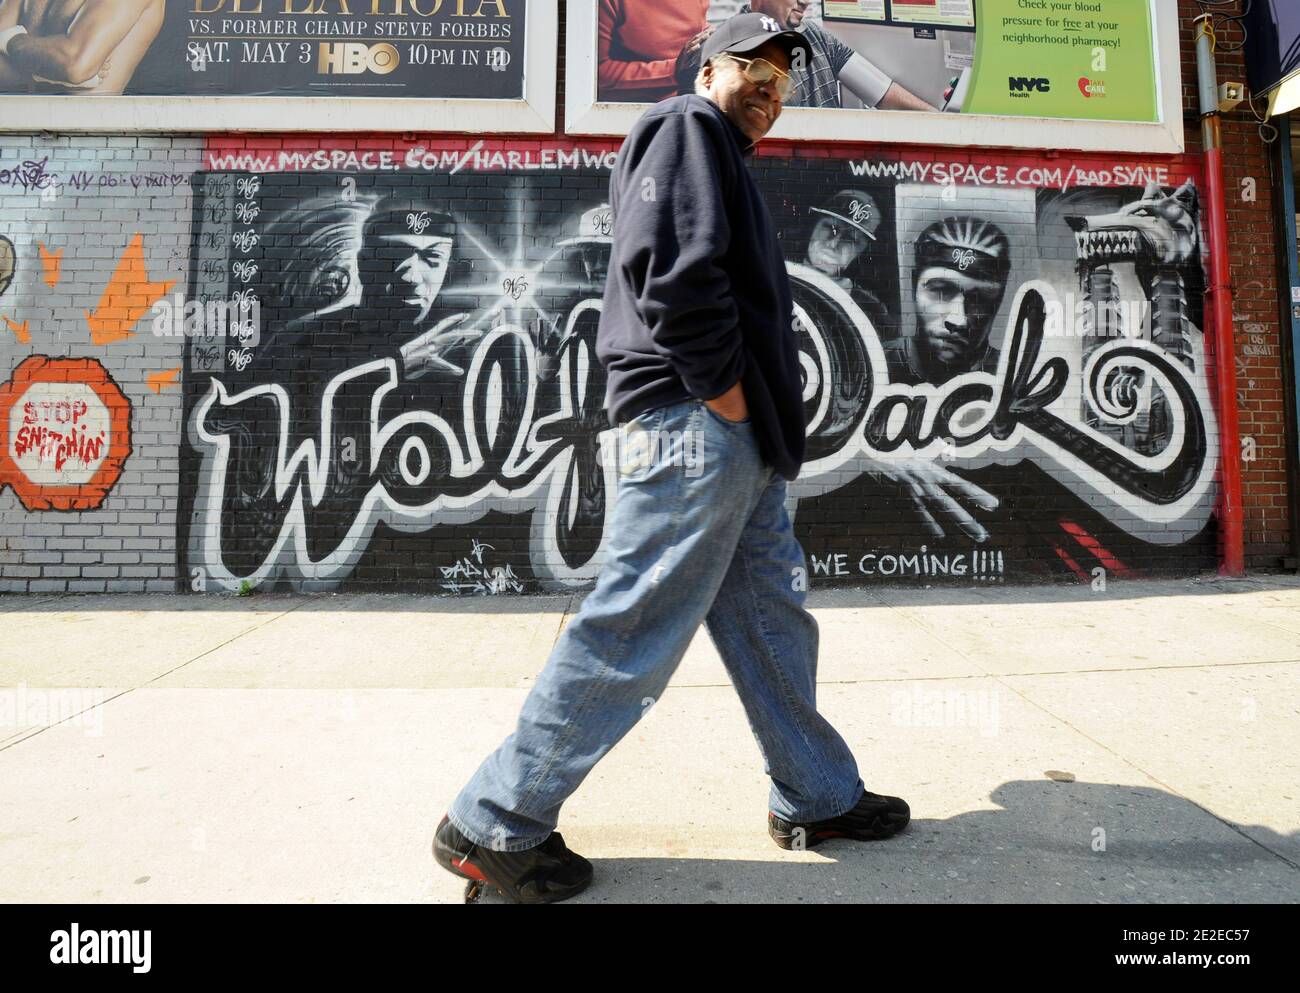 Fußgänger vor einer bemalten Wand, Graff, Graffiti, Werbeschild für eine Gruppe von Hip Hop, Harlem, New York, 2011. Pieton devant un mur peint, Graff, Graffiti, Tag publicitaire pour un groupe de Hip Hop, Harlem, New-York, 2011. Fotos von David Lefranc / ABACAPRESS.COM Stockfoto